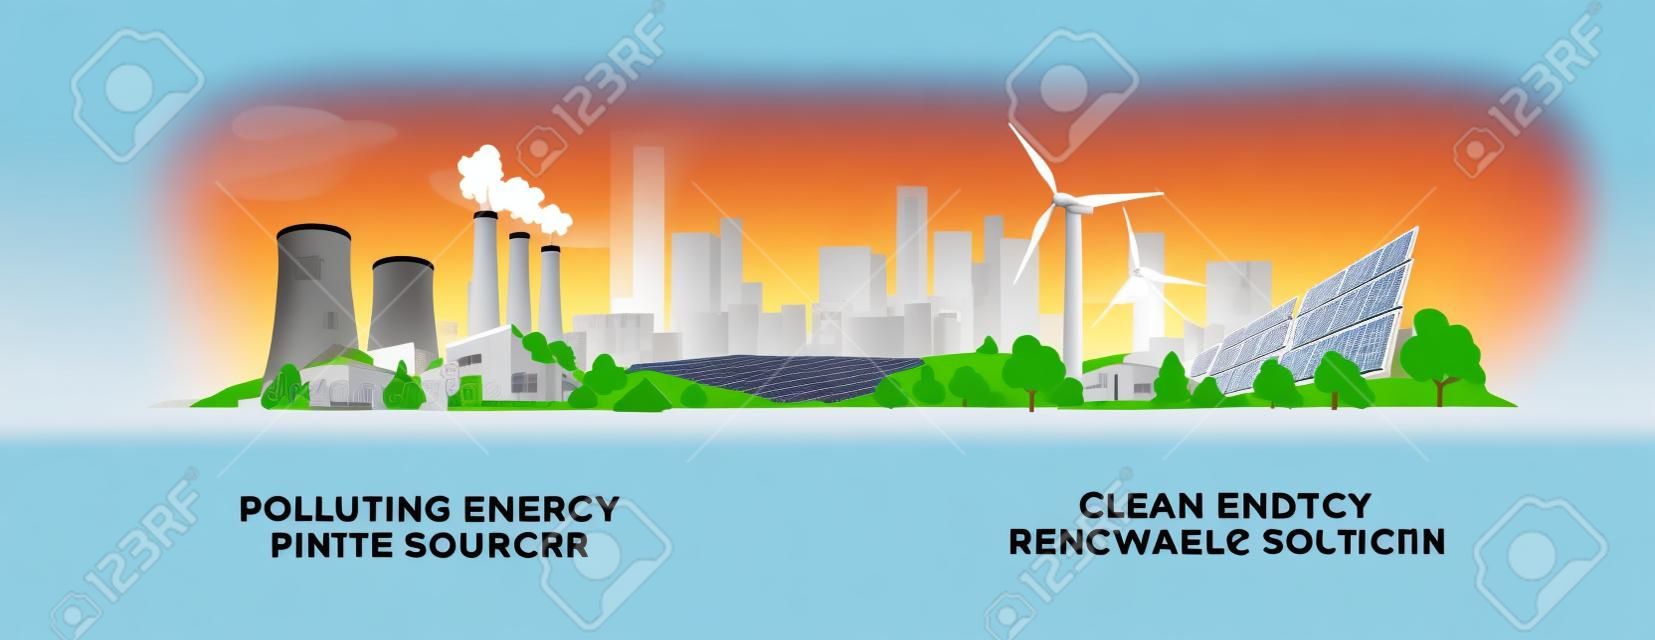 Векторная иллюстрация, показывающая производство чистой и загрязняющей электроэнергии. Загрязнение ископаемого энергетического угля и атомных электростанций по сравнению с чистыми солнечными батареями и возобновляемыми источниками энергии ветряных турбин.